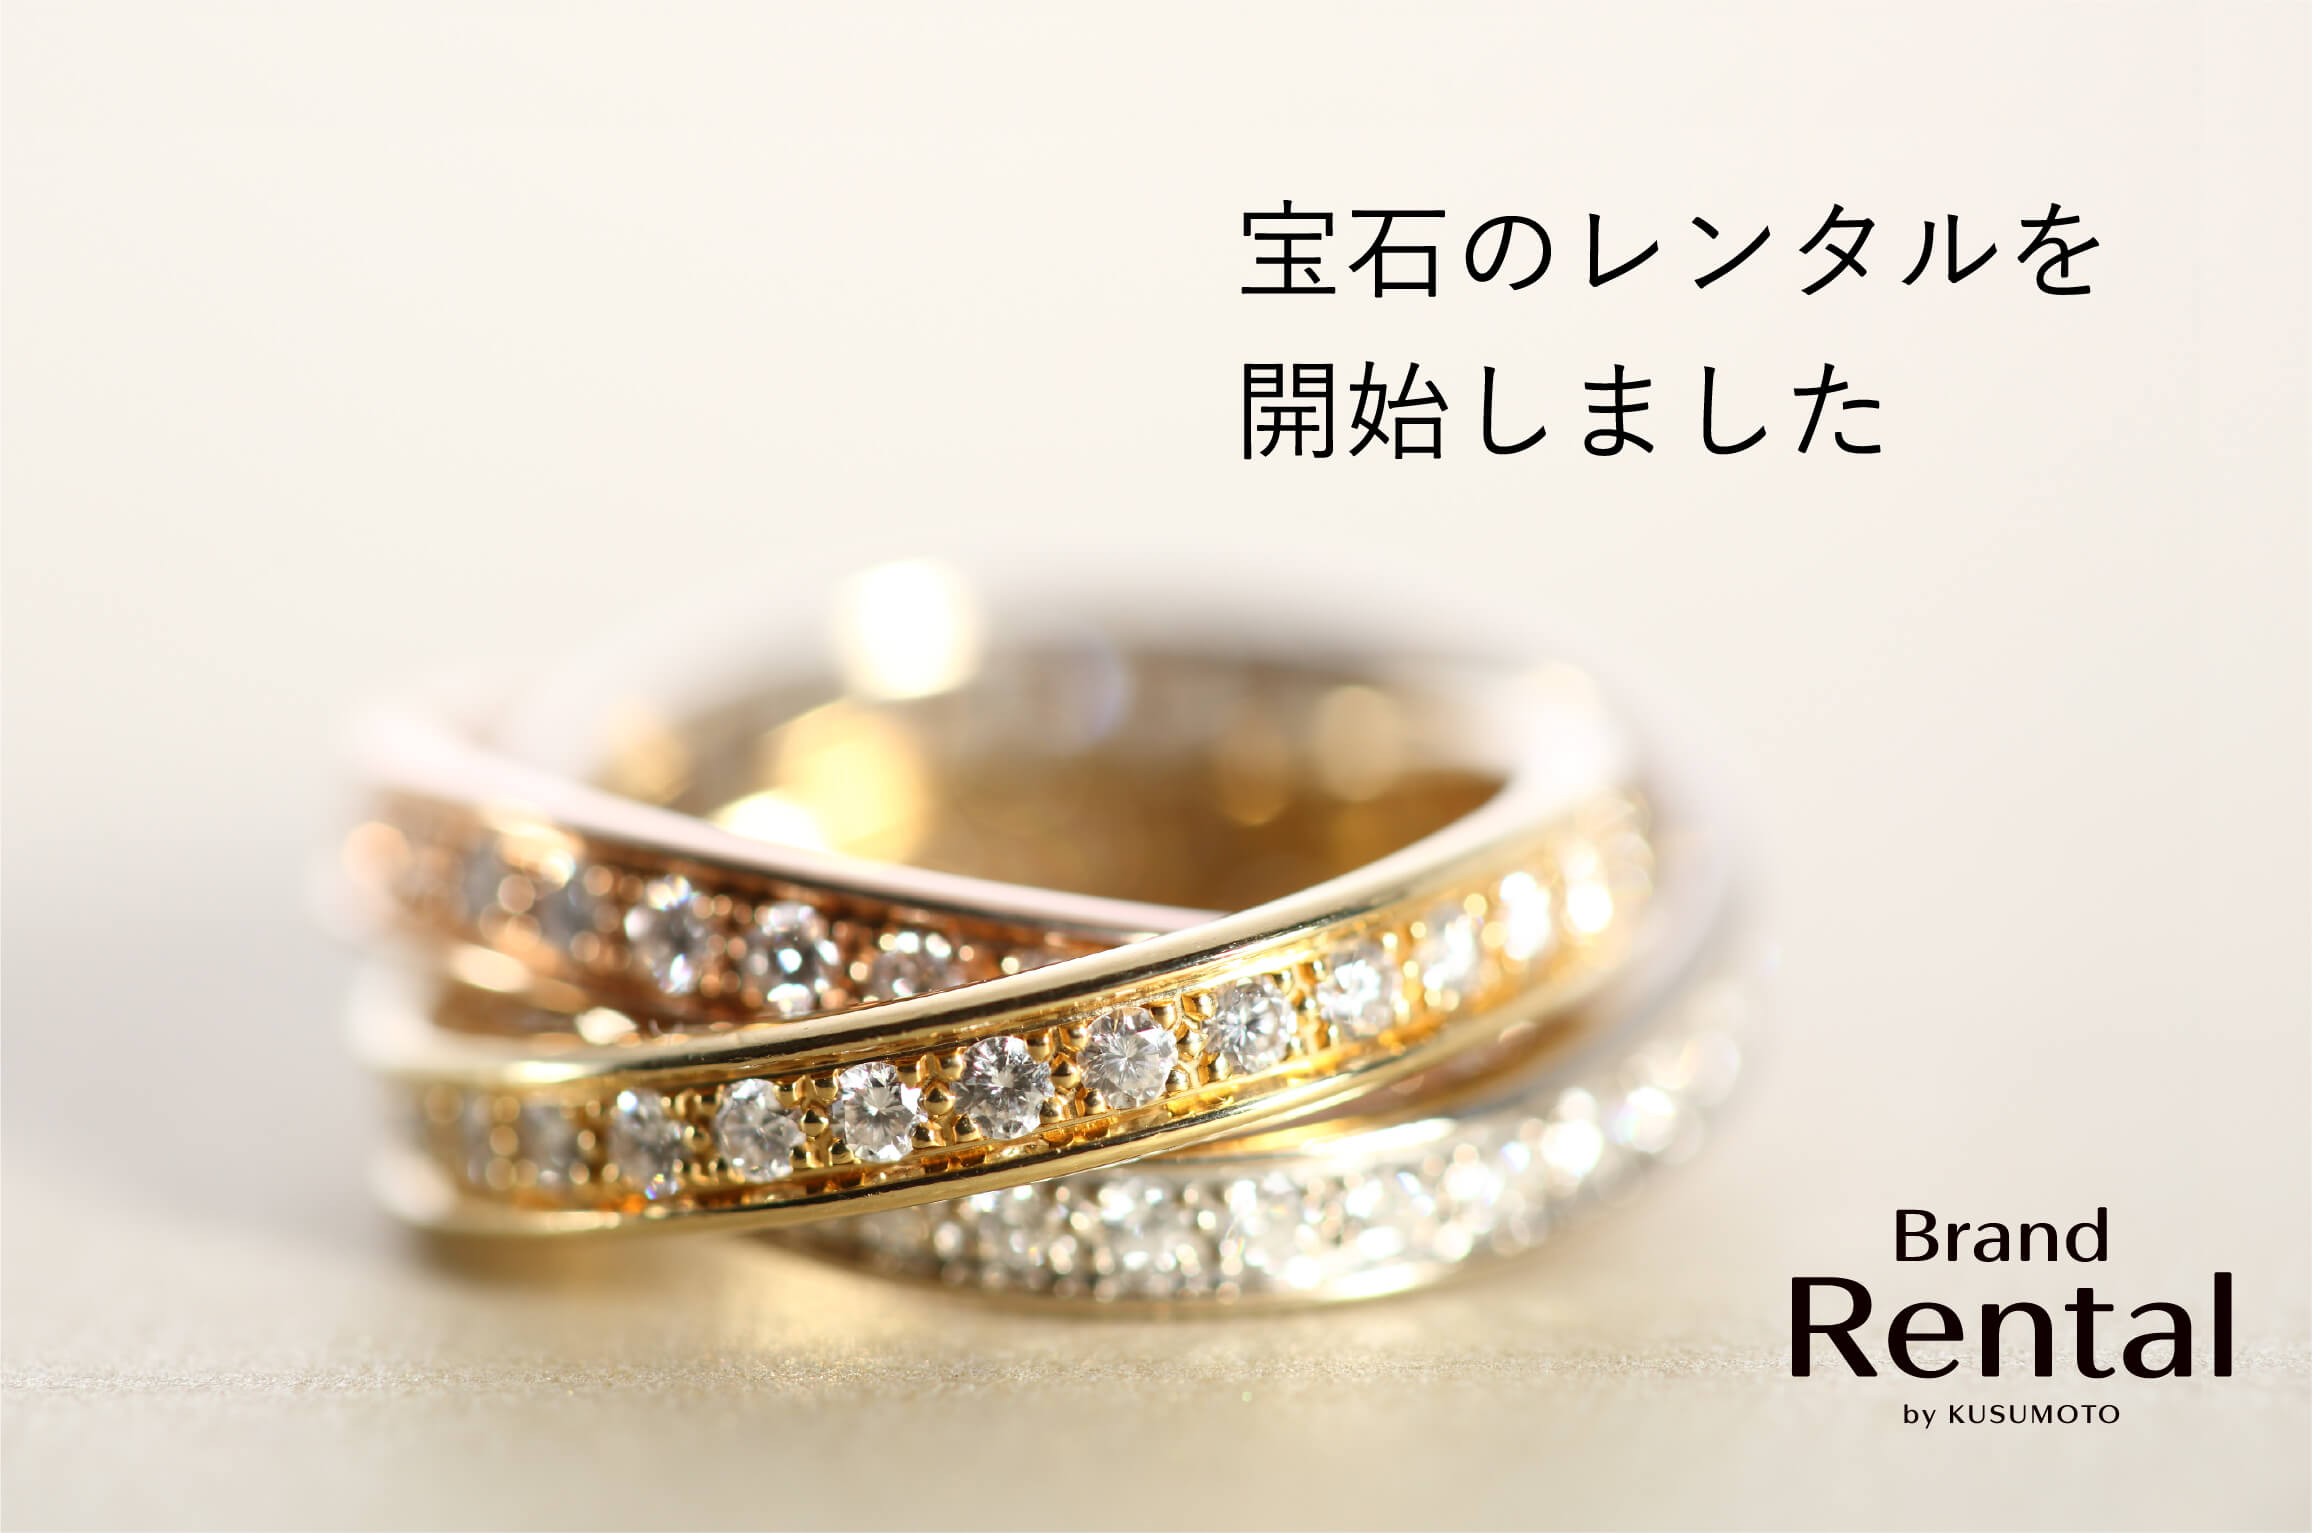 宝石のレンタルを開始しました Brand Rental by KUSUMOTO